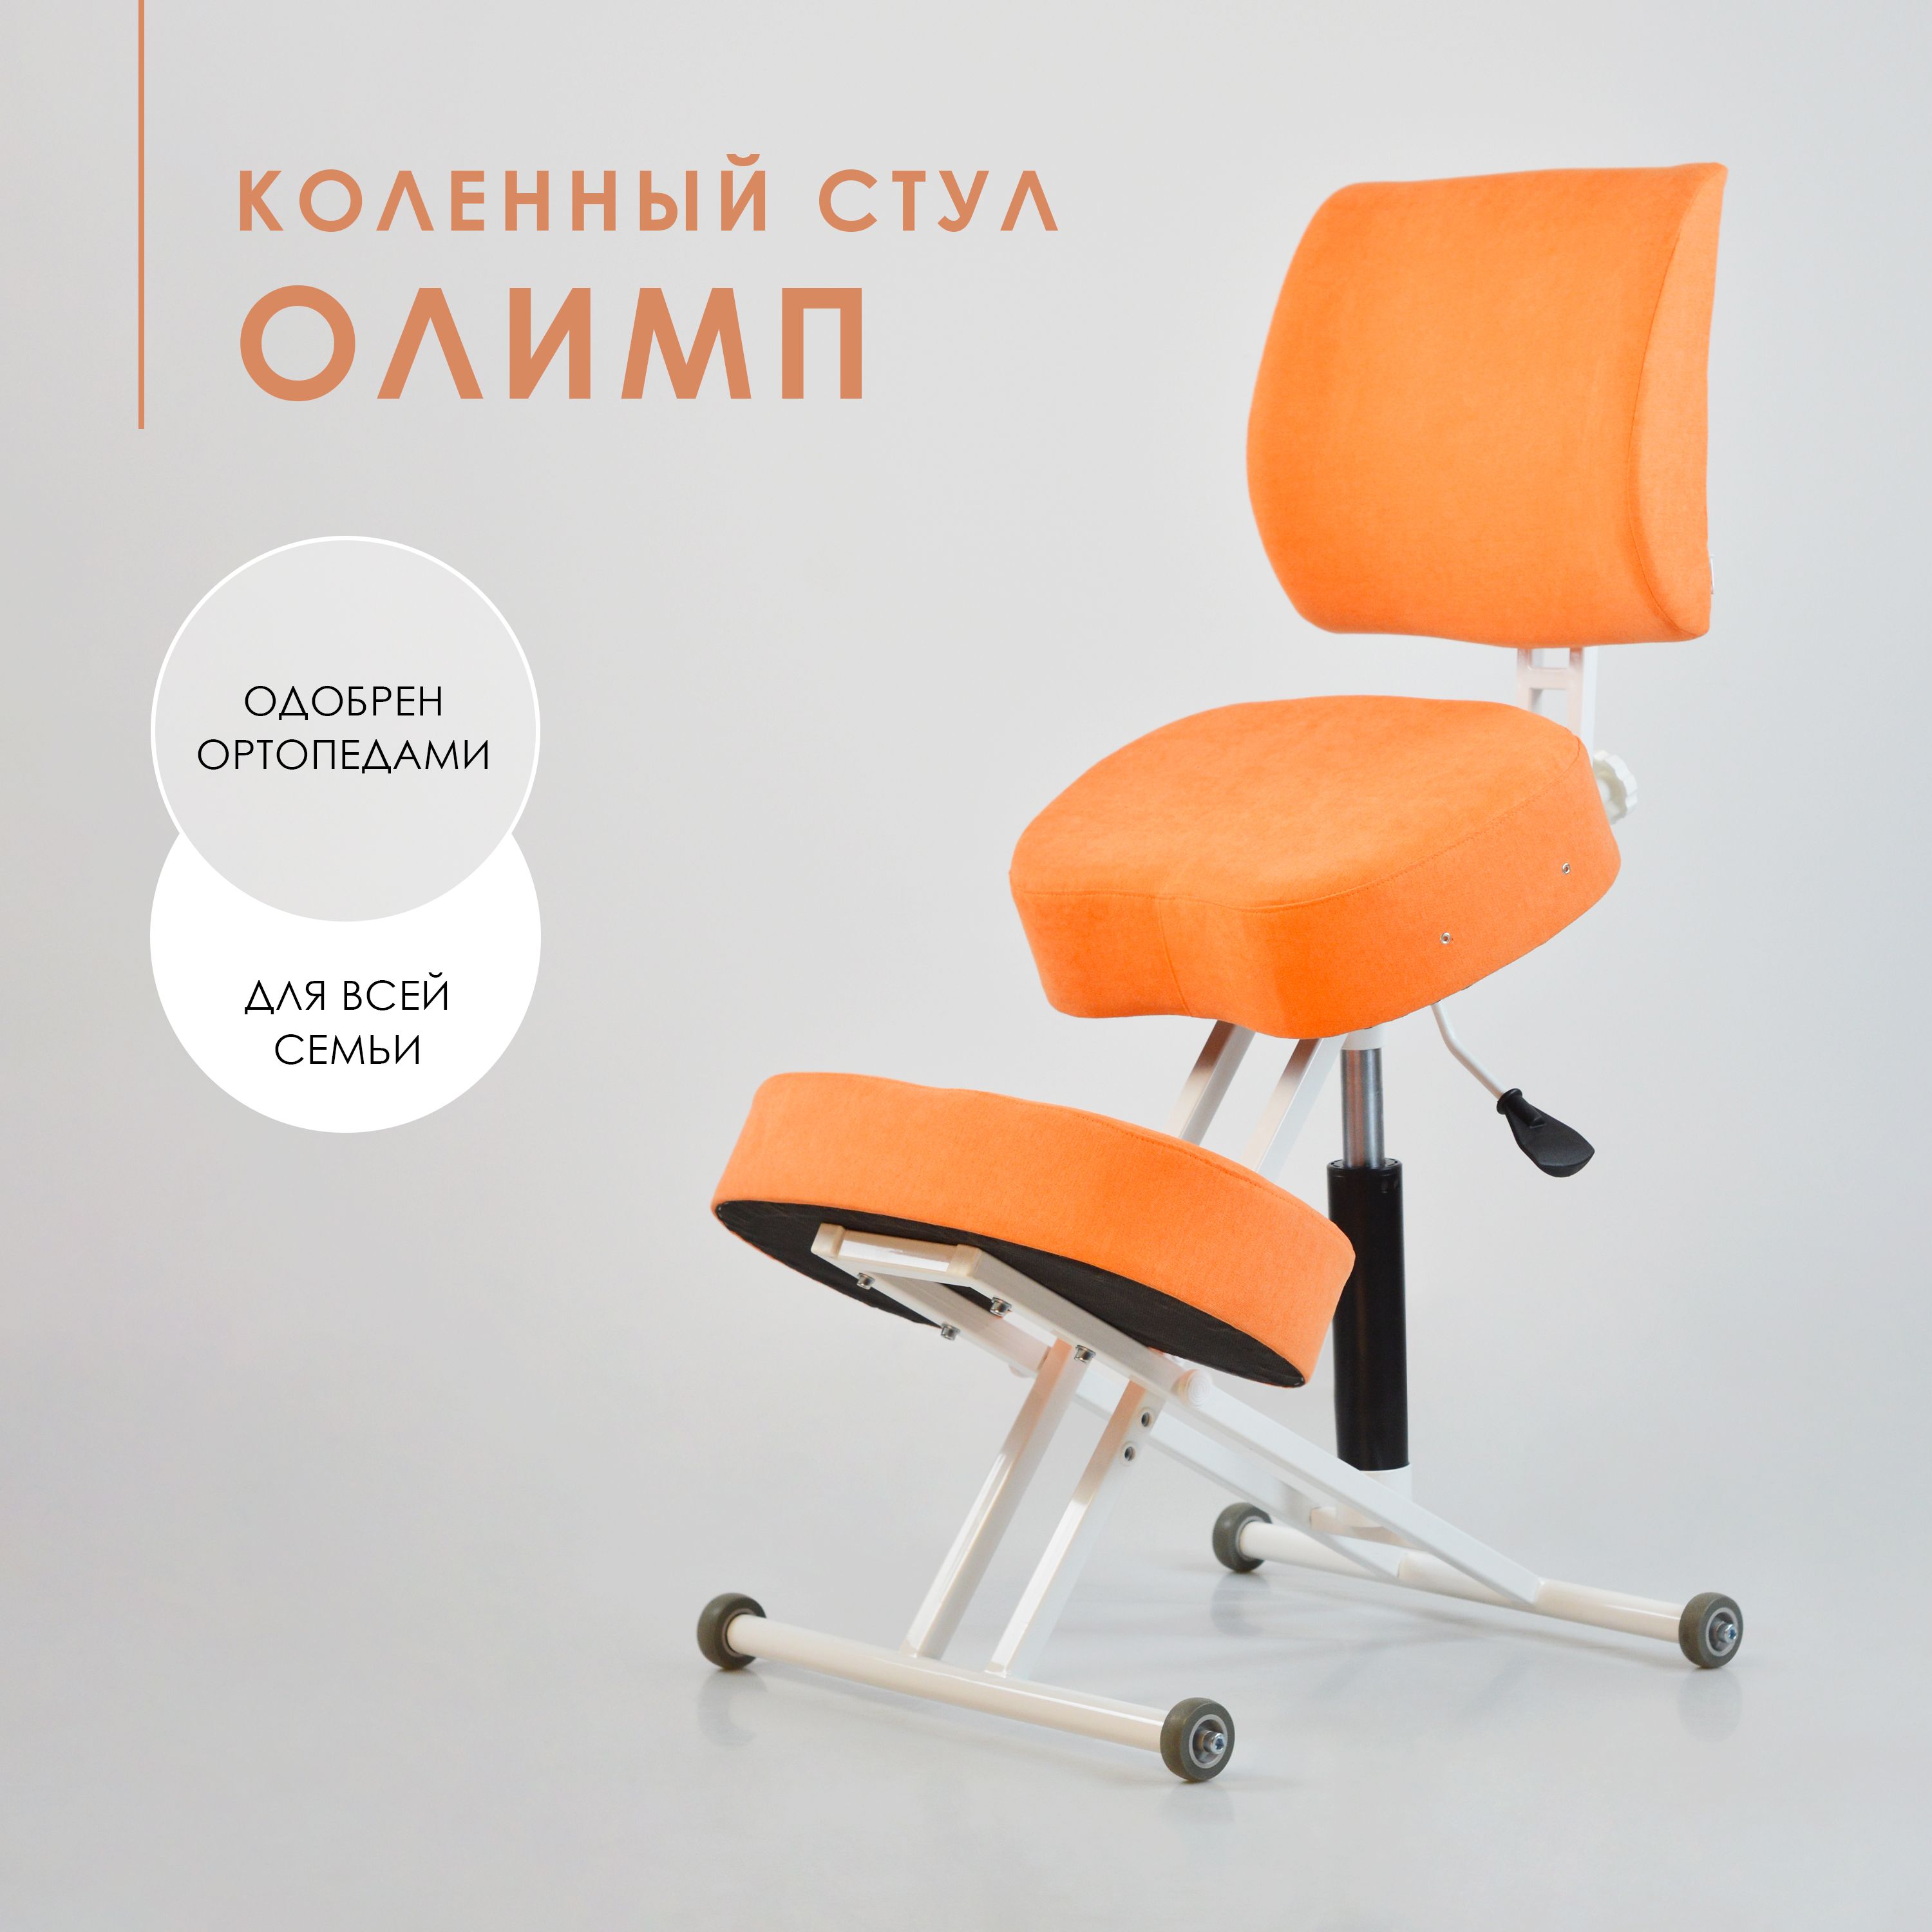 Коленный стул smartstool kw02b